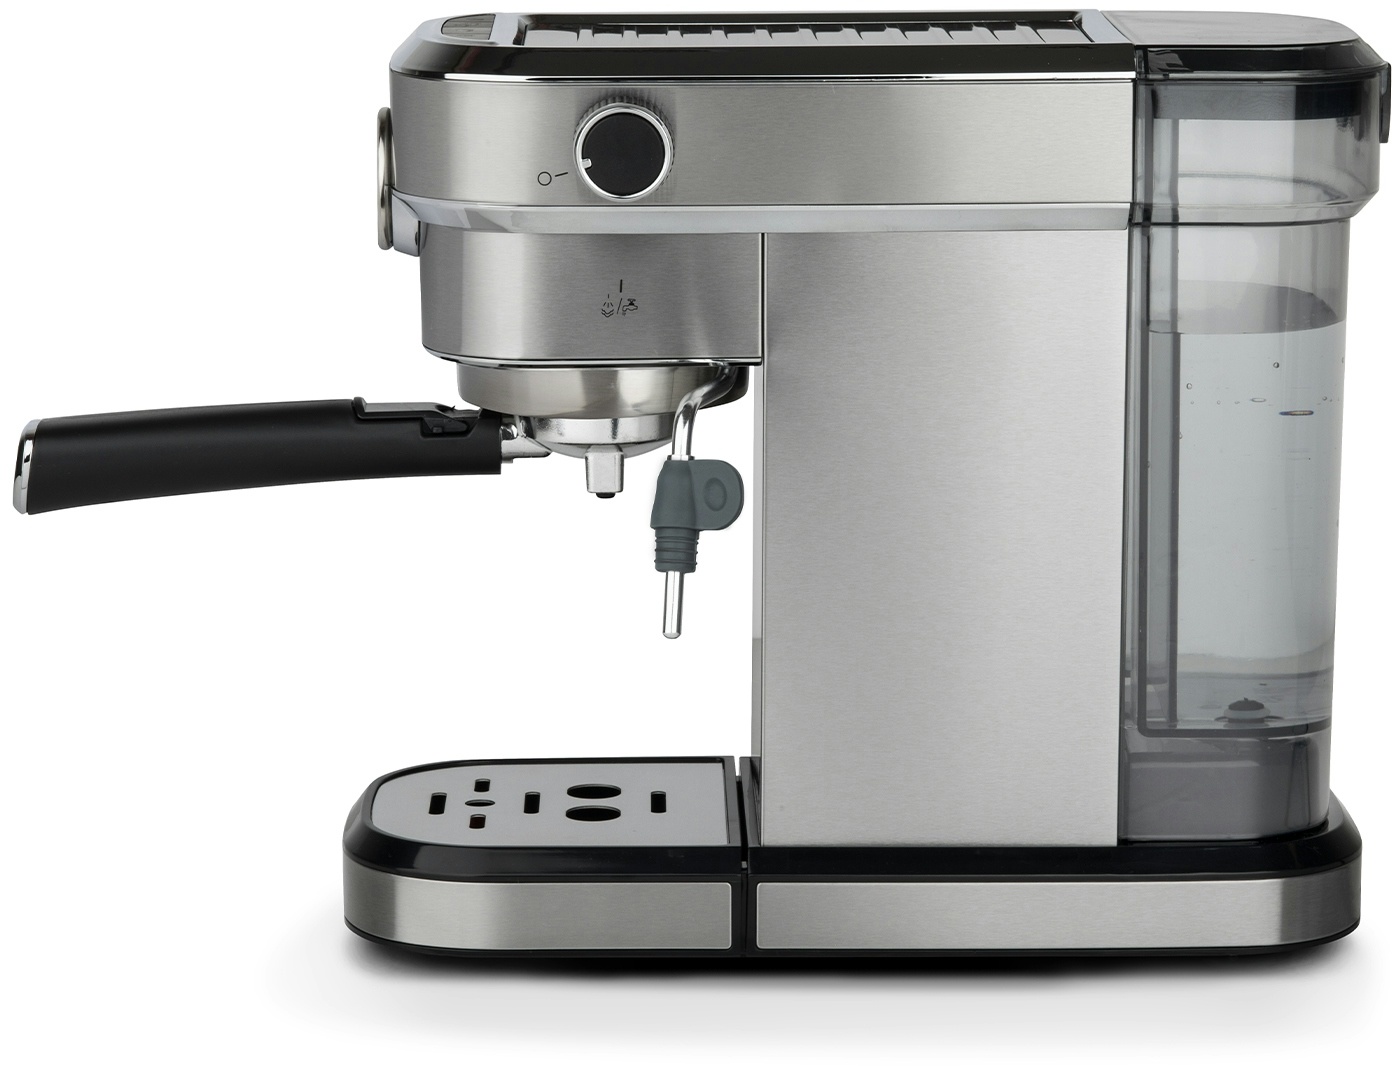 H.Koenig Espressoautomat EXP820 - 15 Bar Druck, 1,1L, eingebaute Barometerpumpe, Tassenwärmer, Dampfdüse, Kaffee- und Milchgetränke, Edelstahl